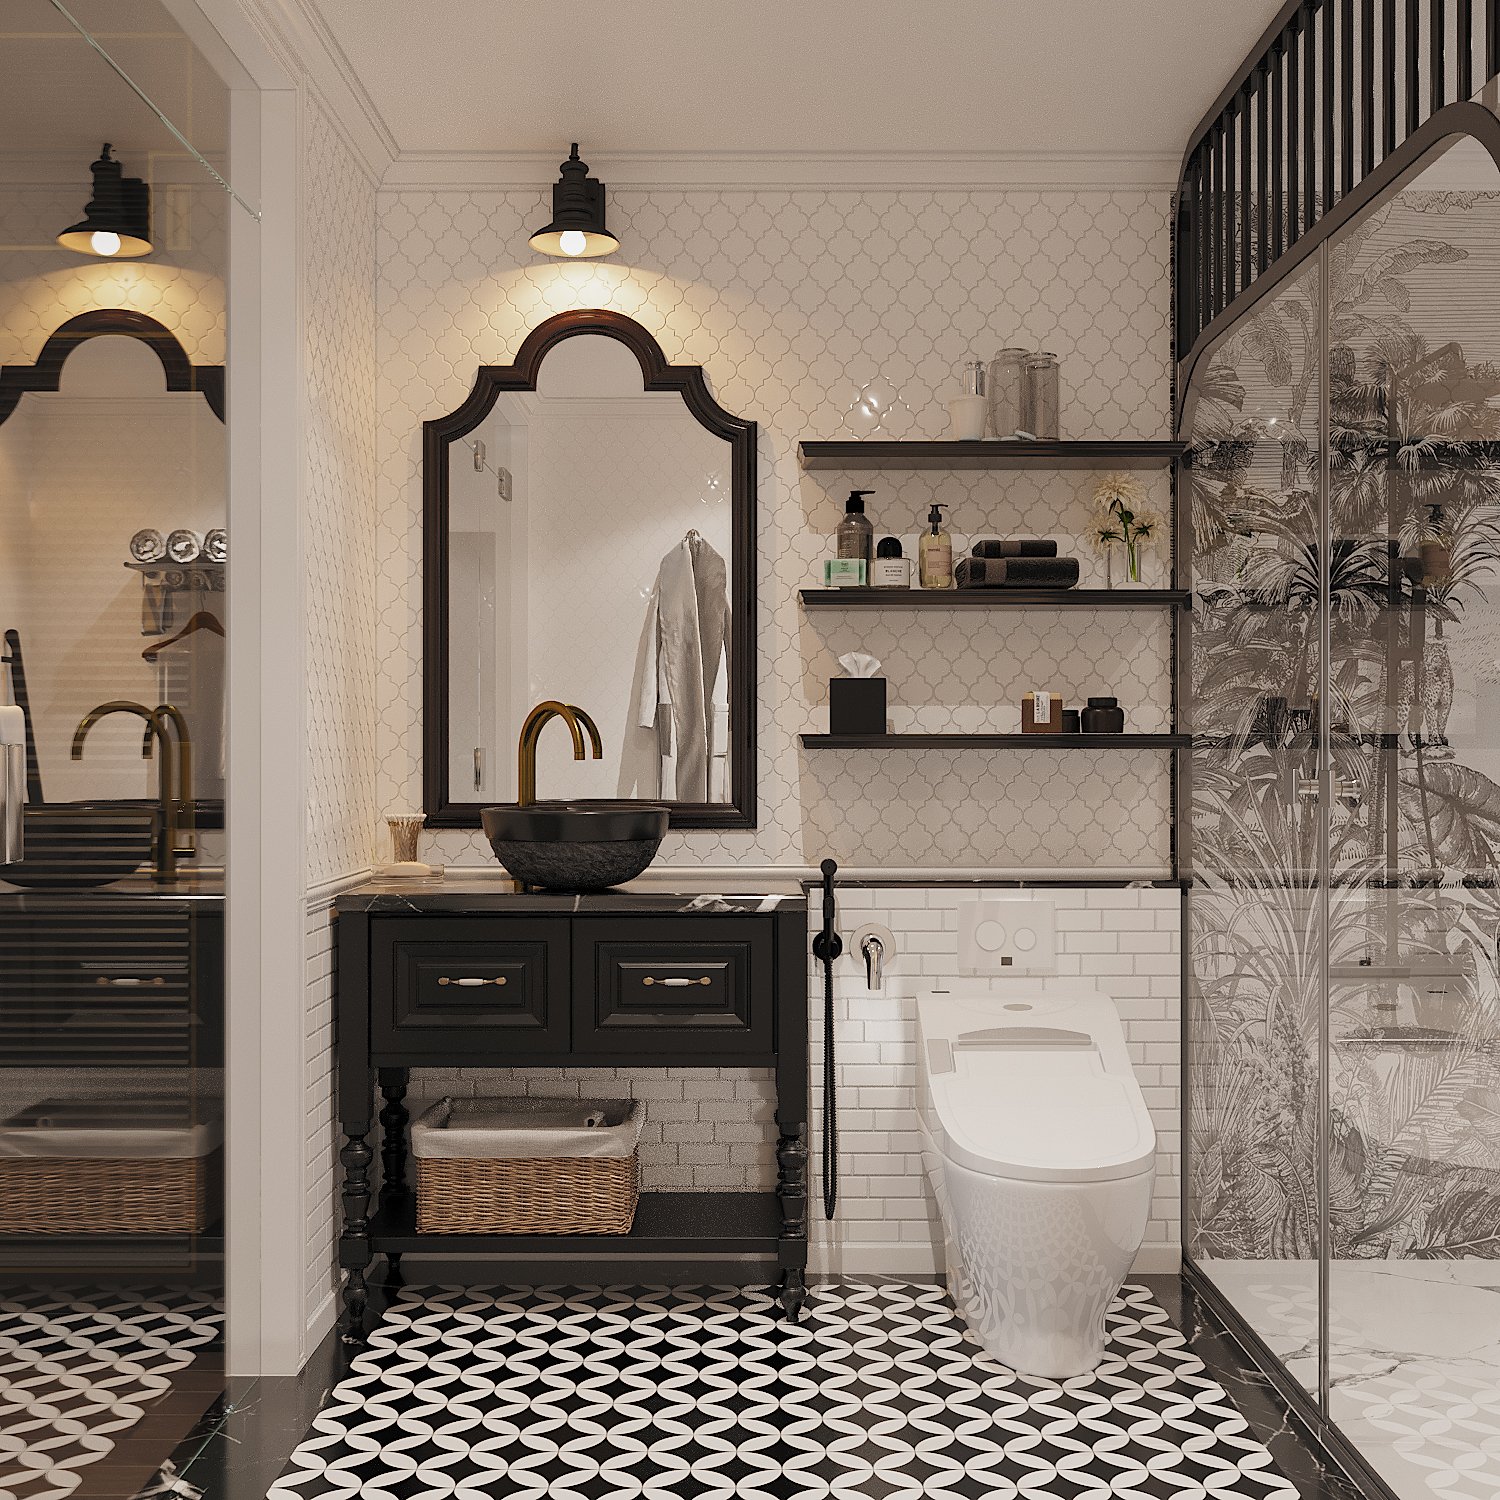 Phòng tắm được thiết kế đảm bảo cả về công thái học lẫn tính thẩm mỹ. Tường ốp gạch thẻ màu trắng làm nền cho nội thất màu đen thêm phần nổi bật.